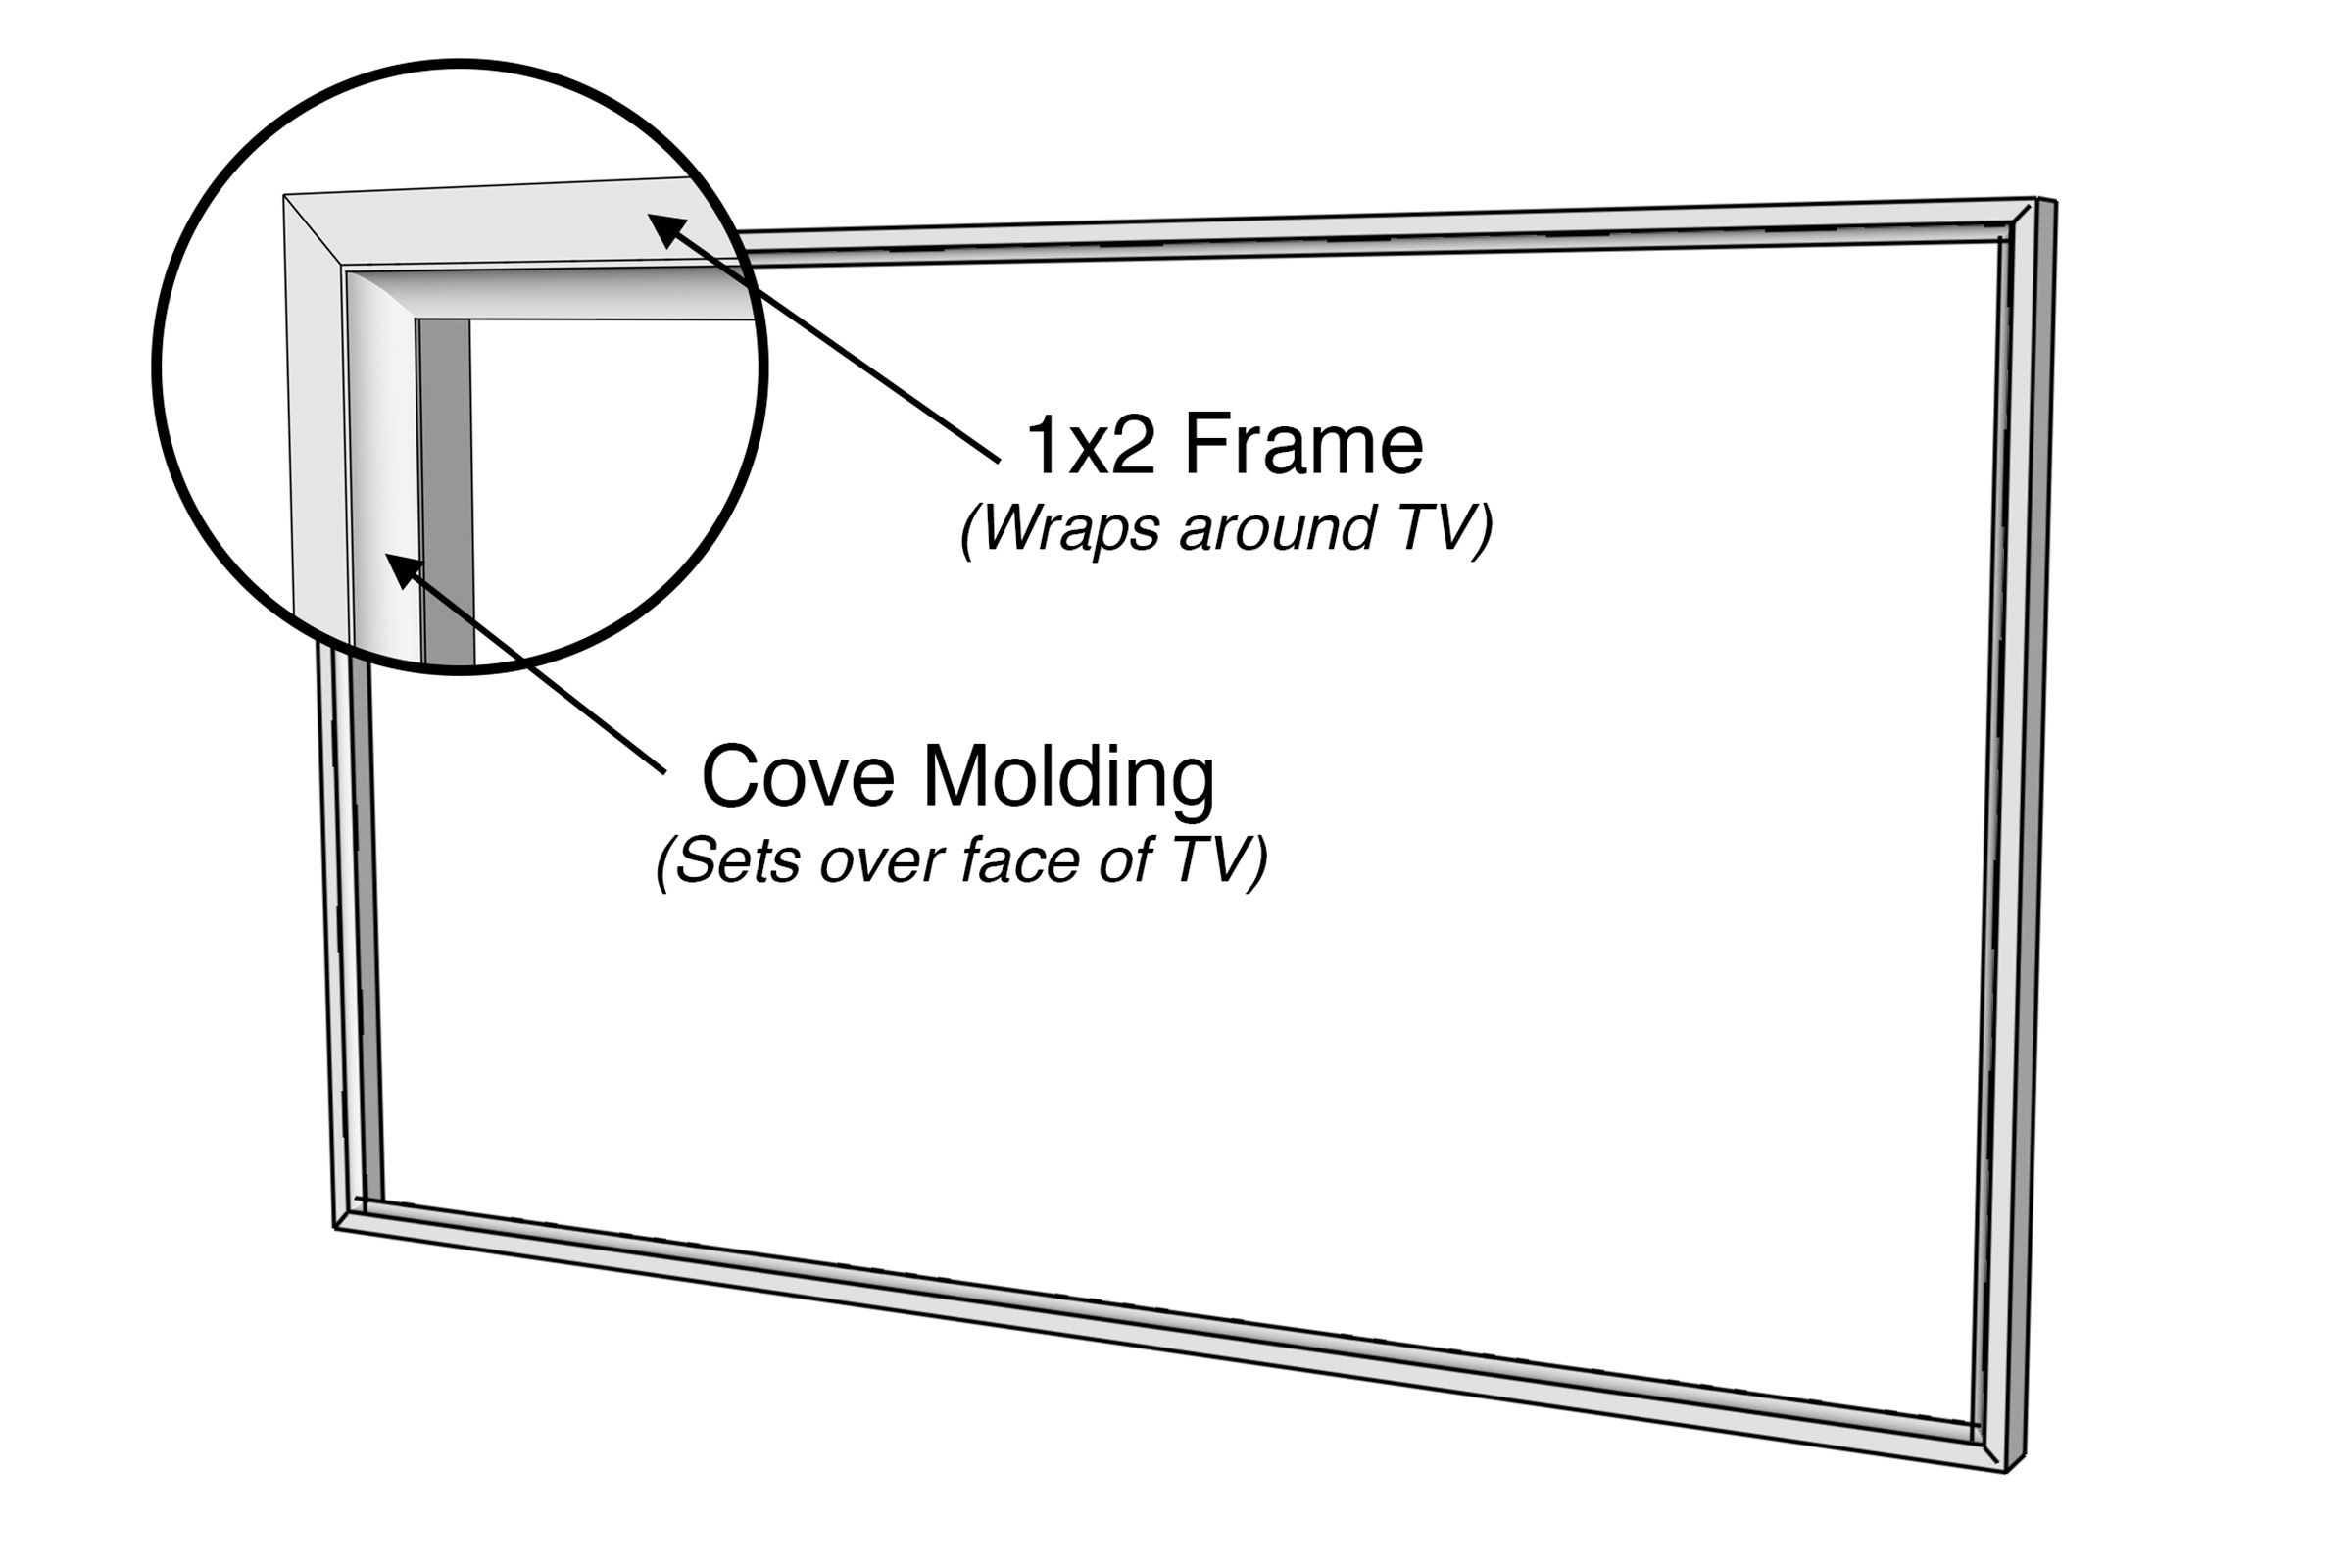 Illustration detailing the moulding of the DIY TV frame